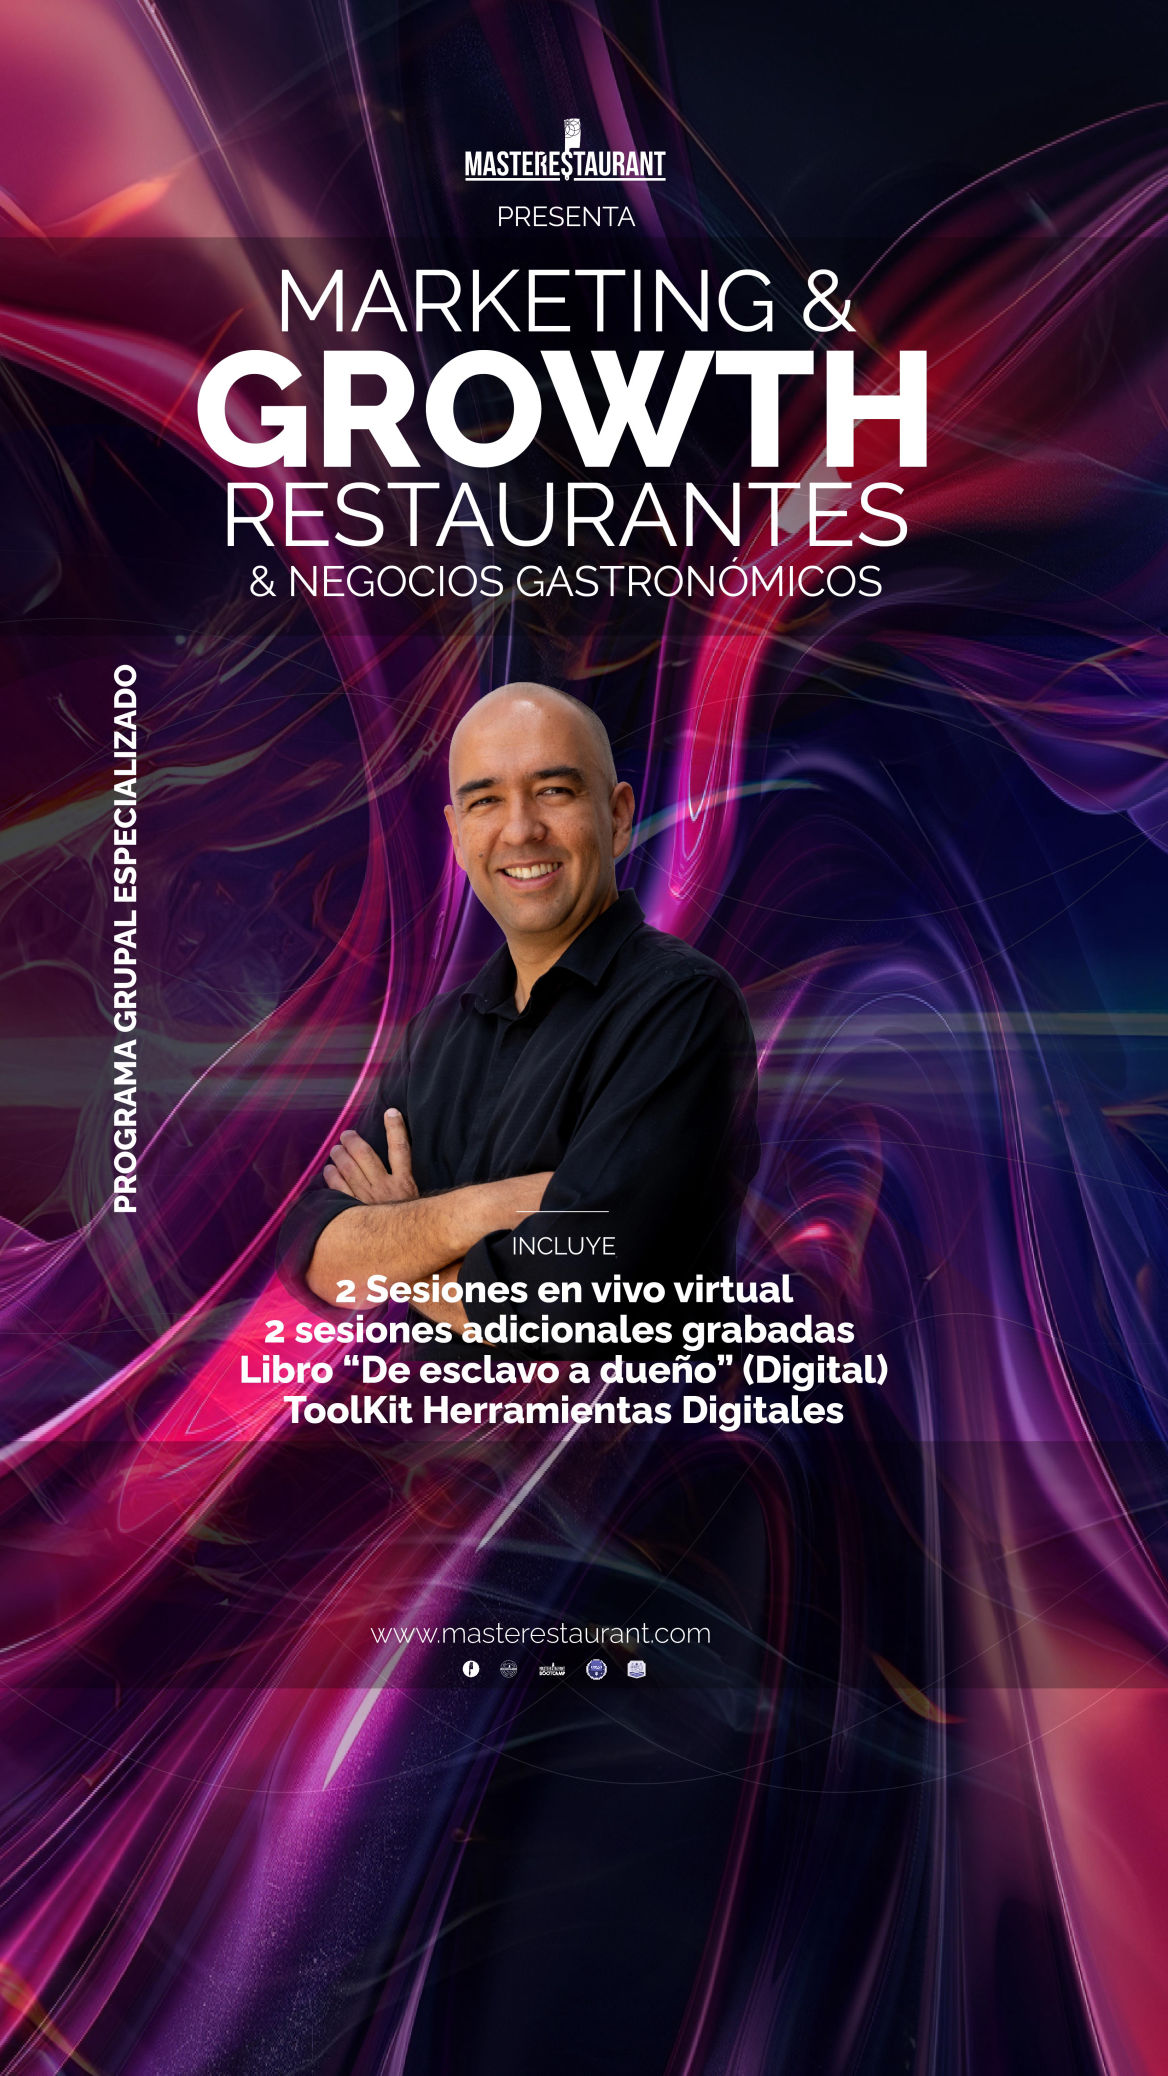 Marketing and Growth para restaurantes, dark kitchens, negocios gastronómicos masterestaurant (master restaurant)